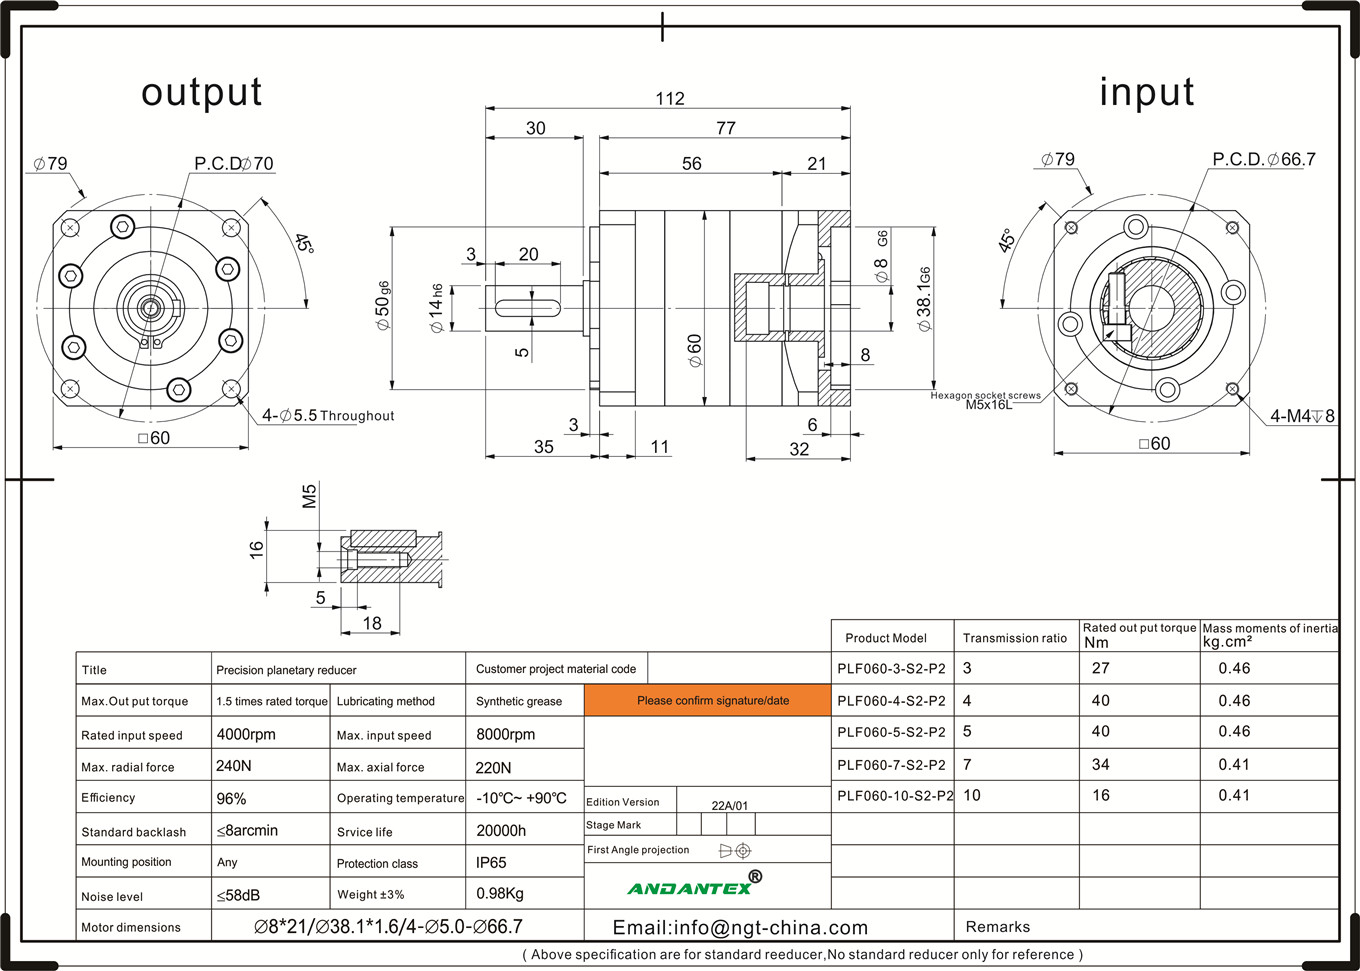 Andantex plf060-10-s2-p2 séri standar kotak gear planét garis aplikasi peralatan manufaktur garis-01